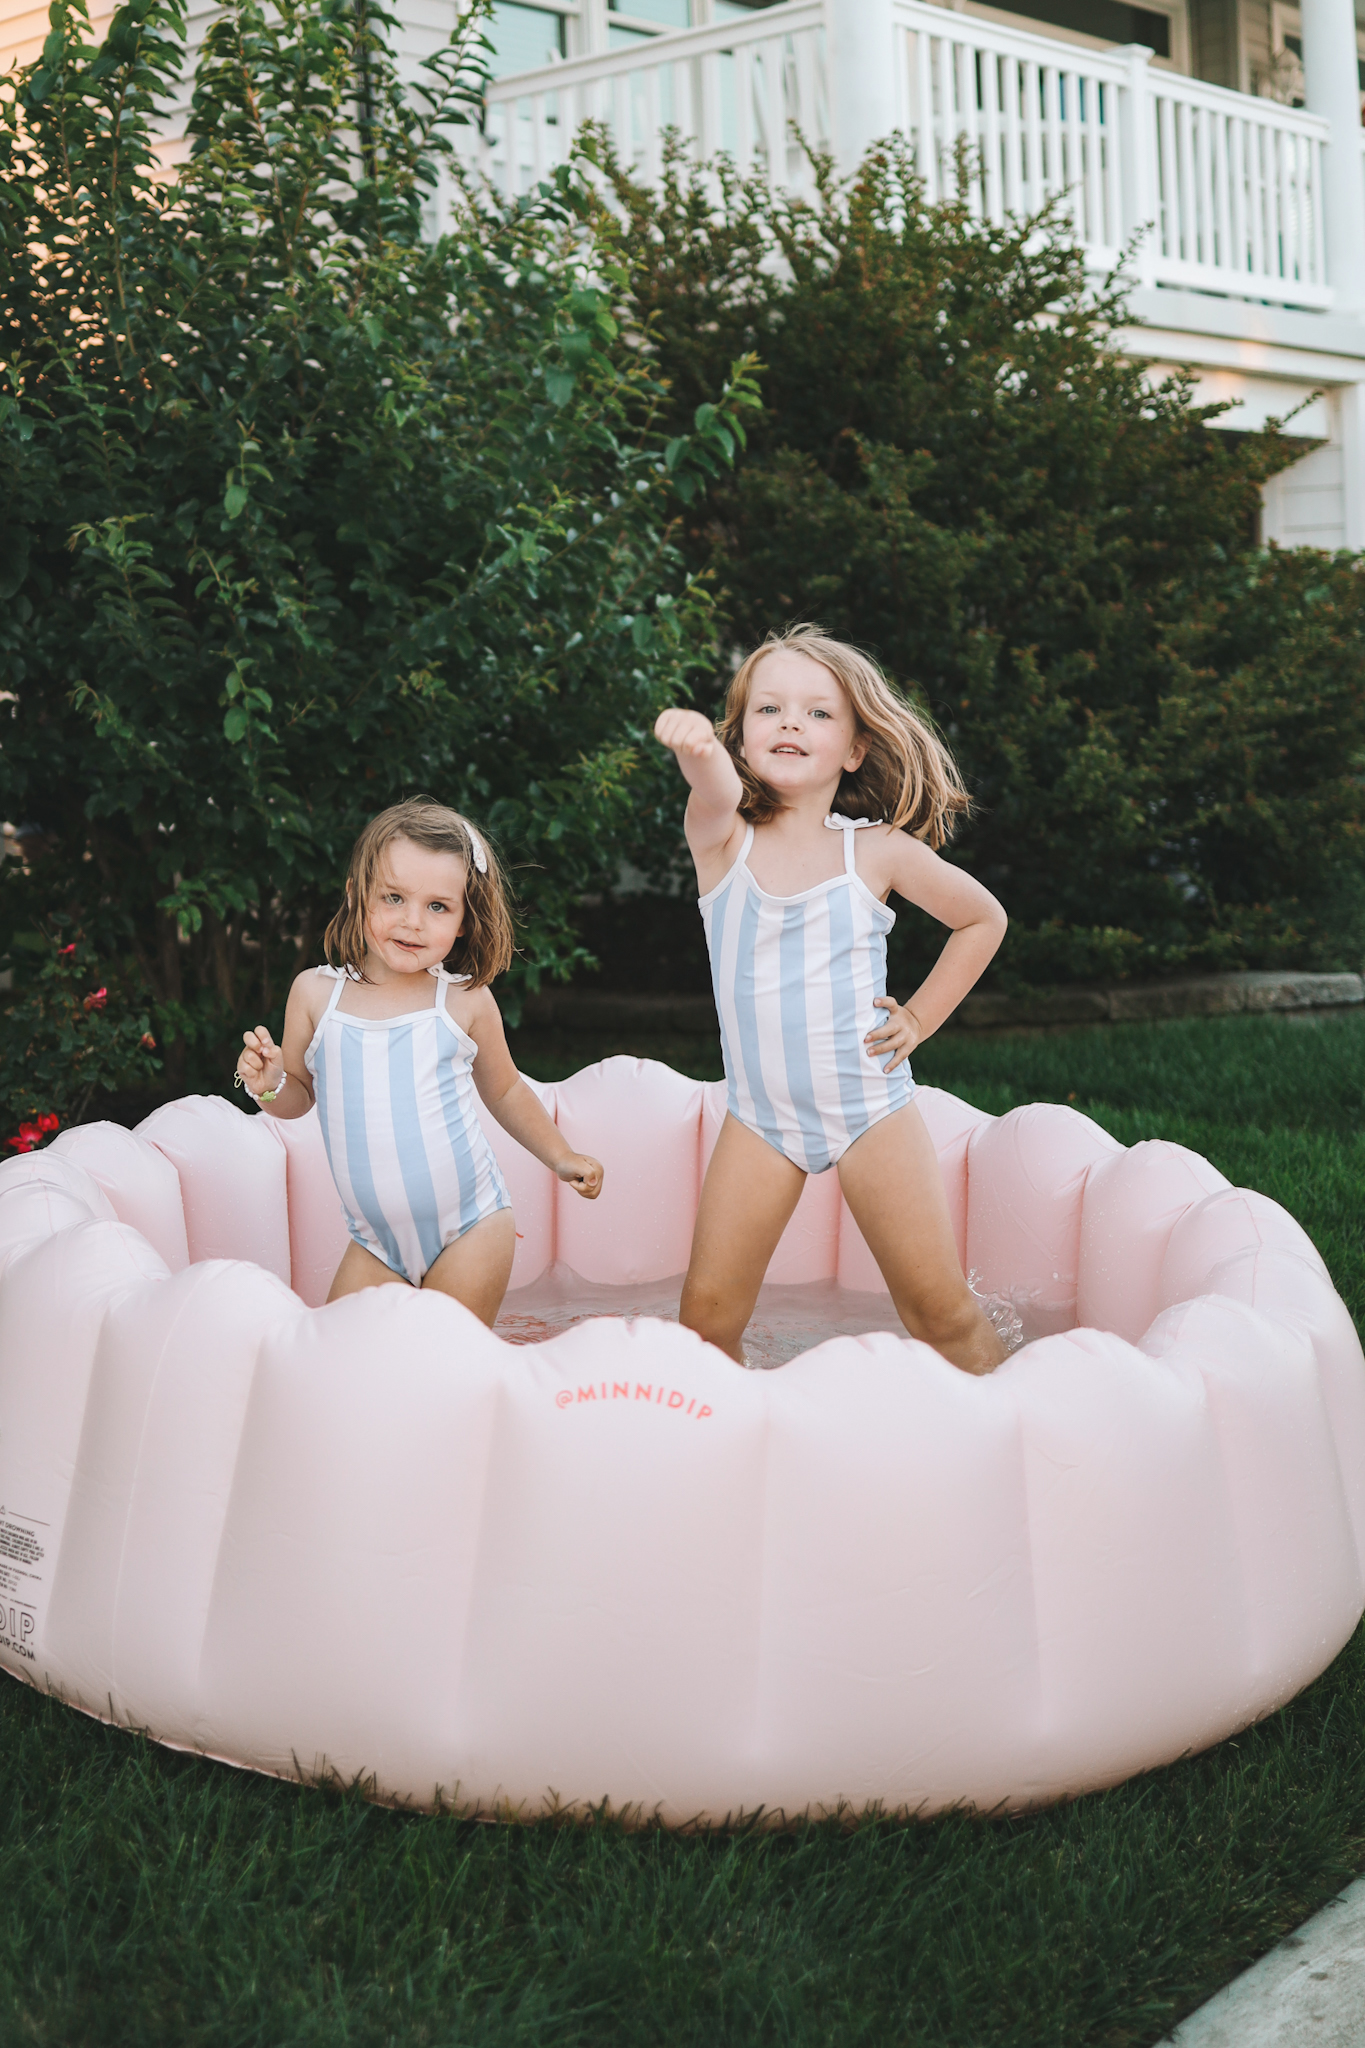 Target Minnidip Pink Scalloped Kids' Pool